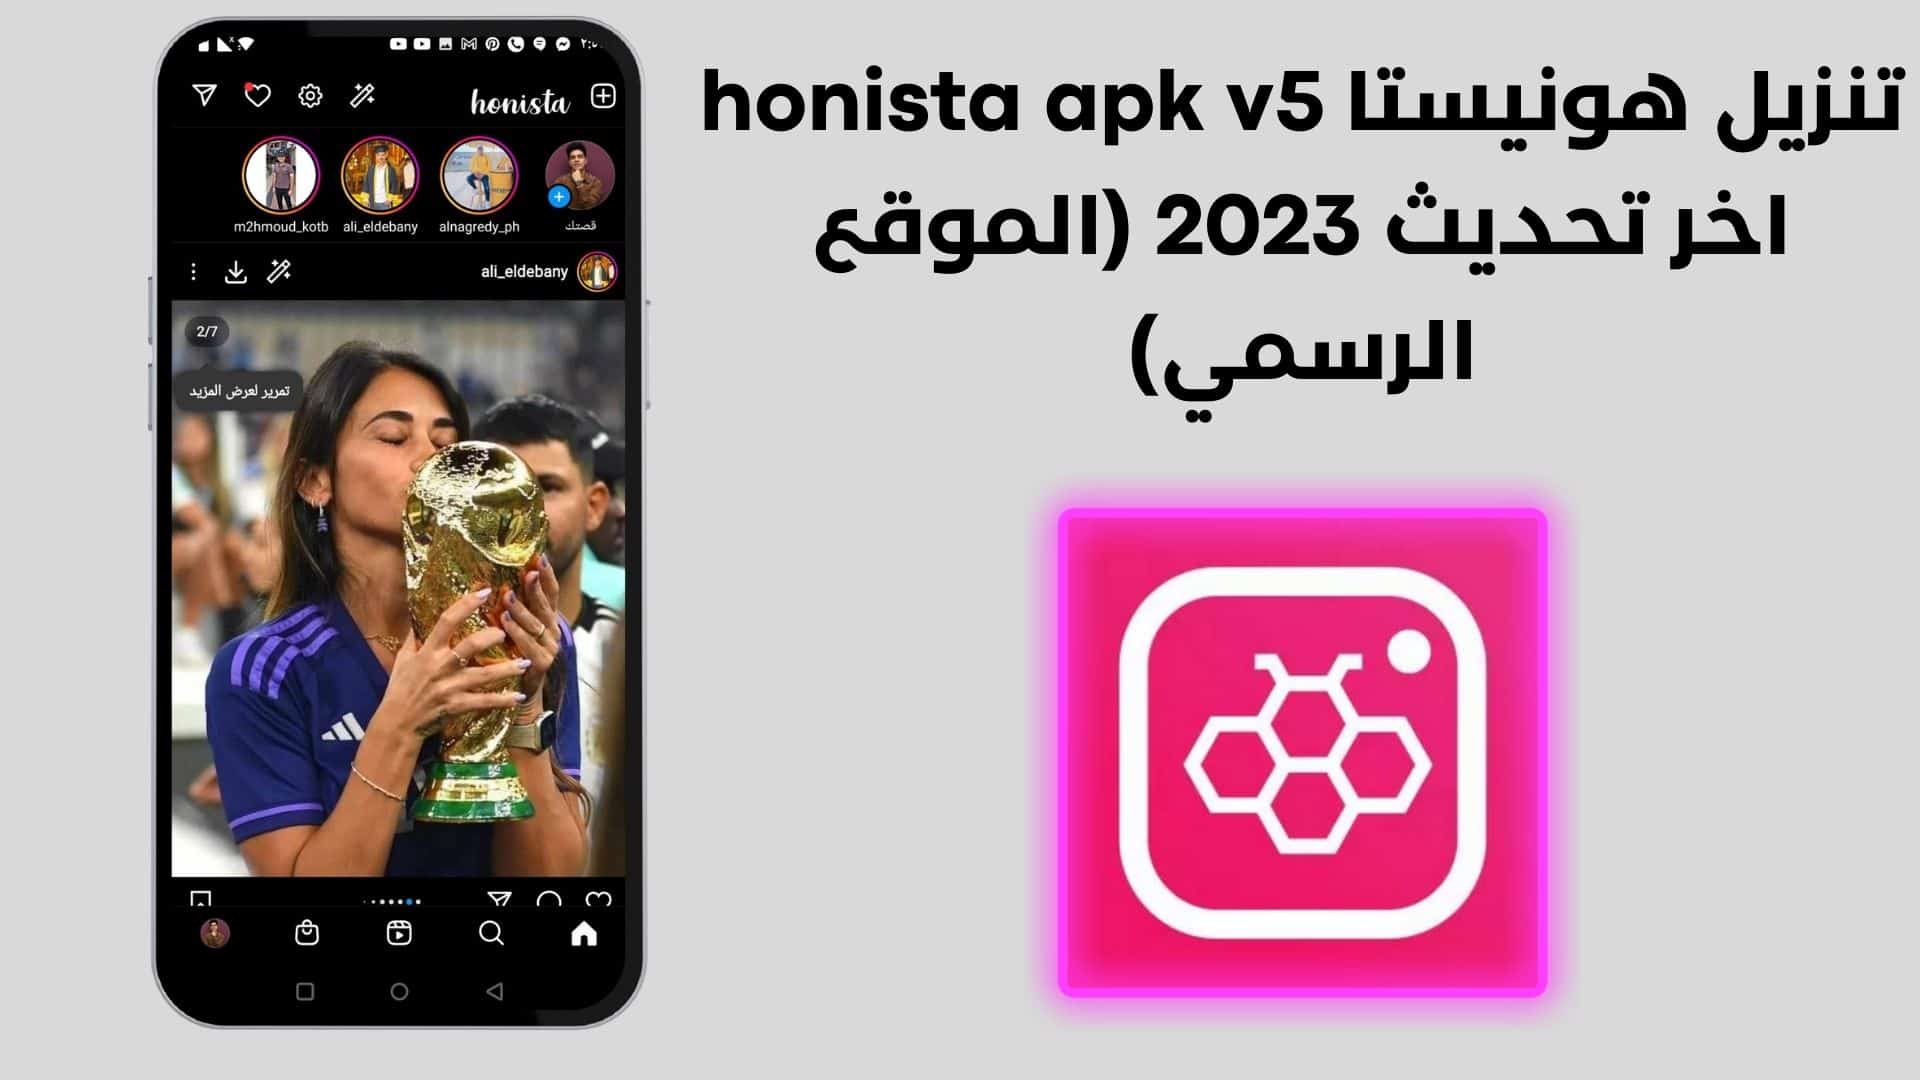 تنزيل هونيستا honista apk v5 اخر تحديث 2023 (الموقع الرسمي)